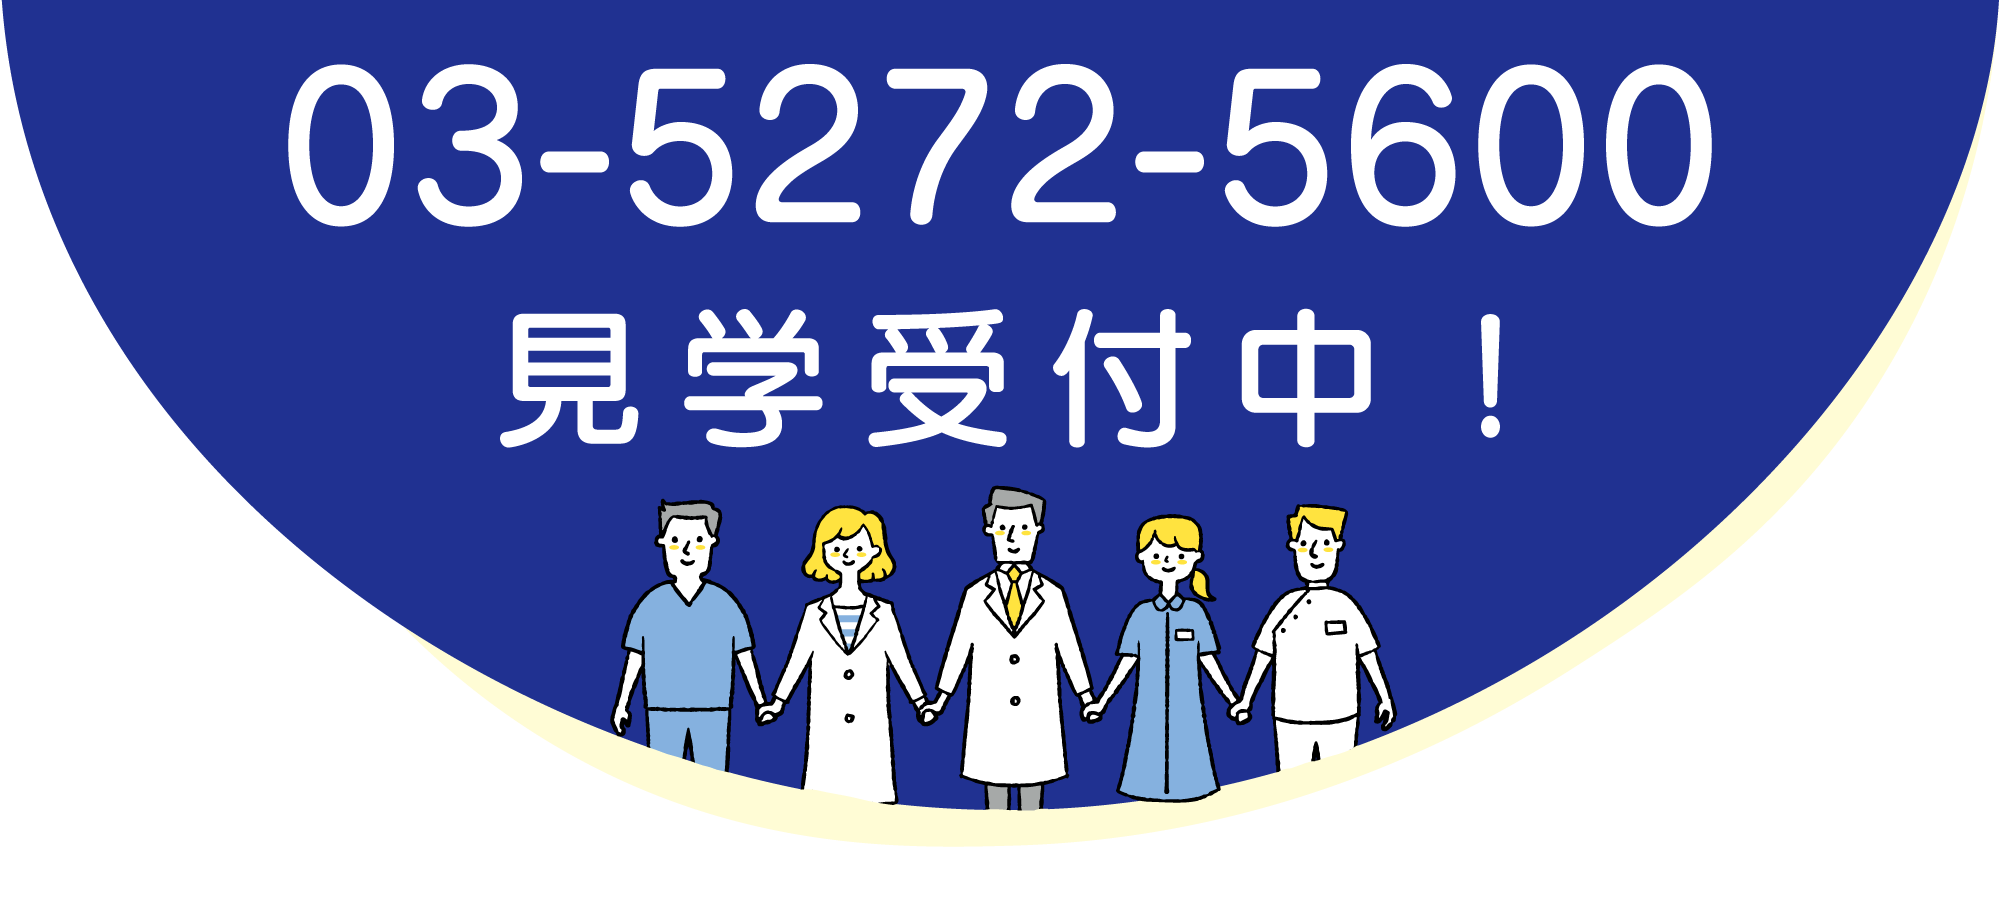 新宿ヒロクリニック電話番号